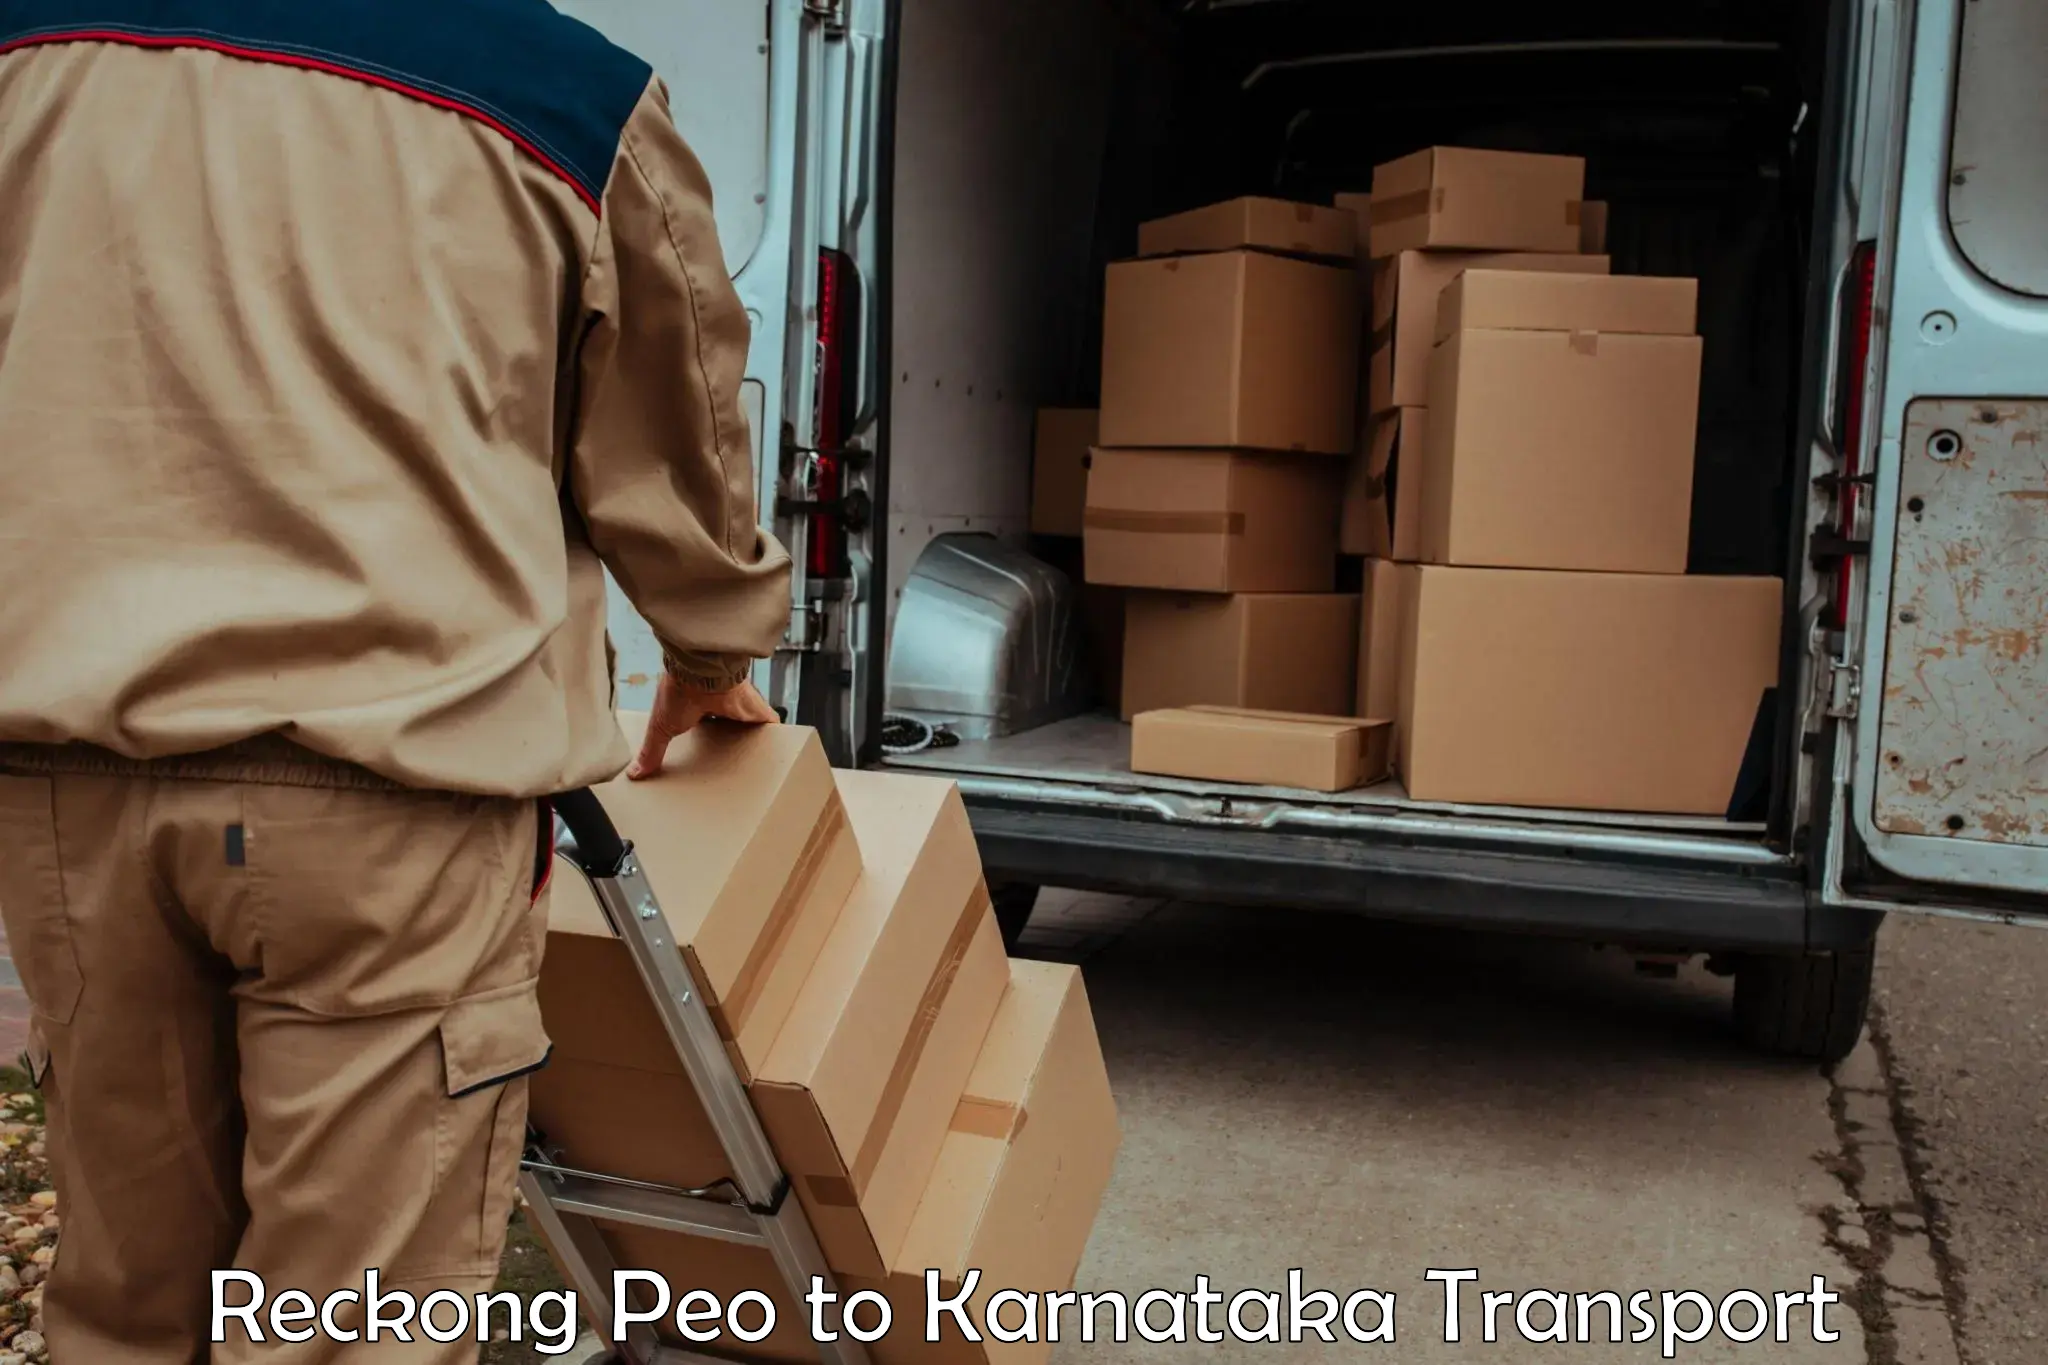 Cargo train transport services Reckong Peo to Kanjarakatte